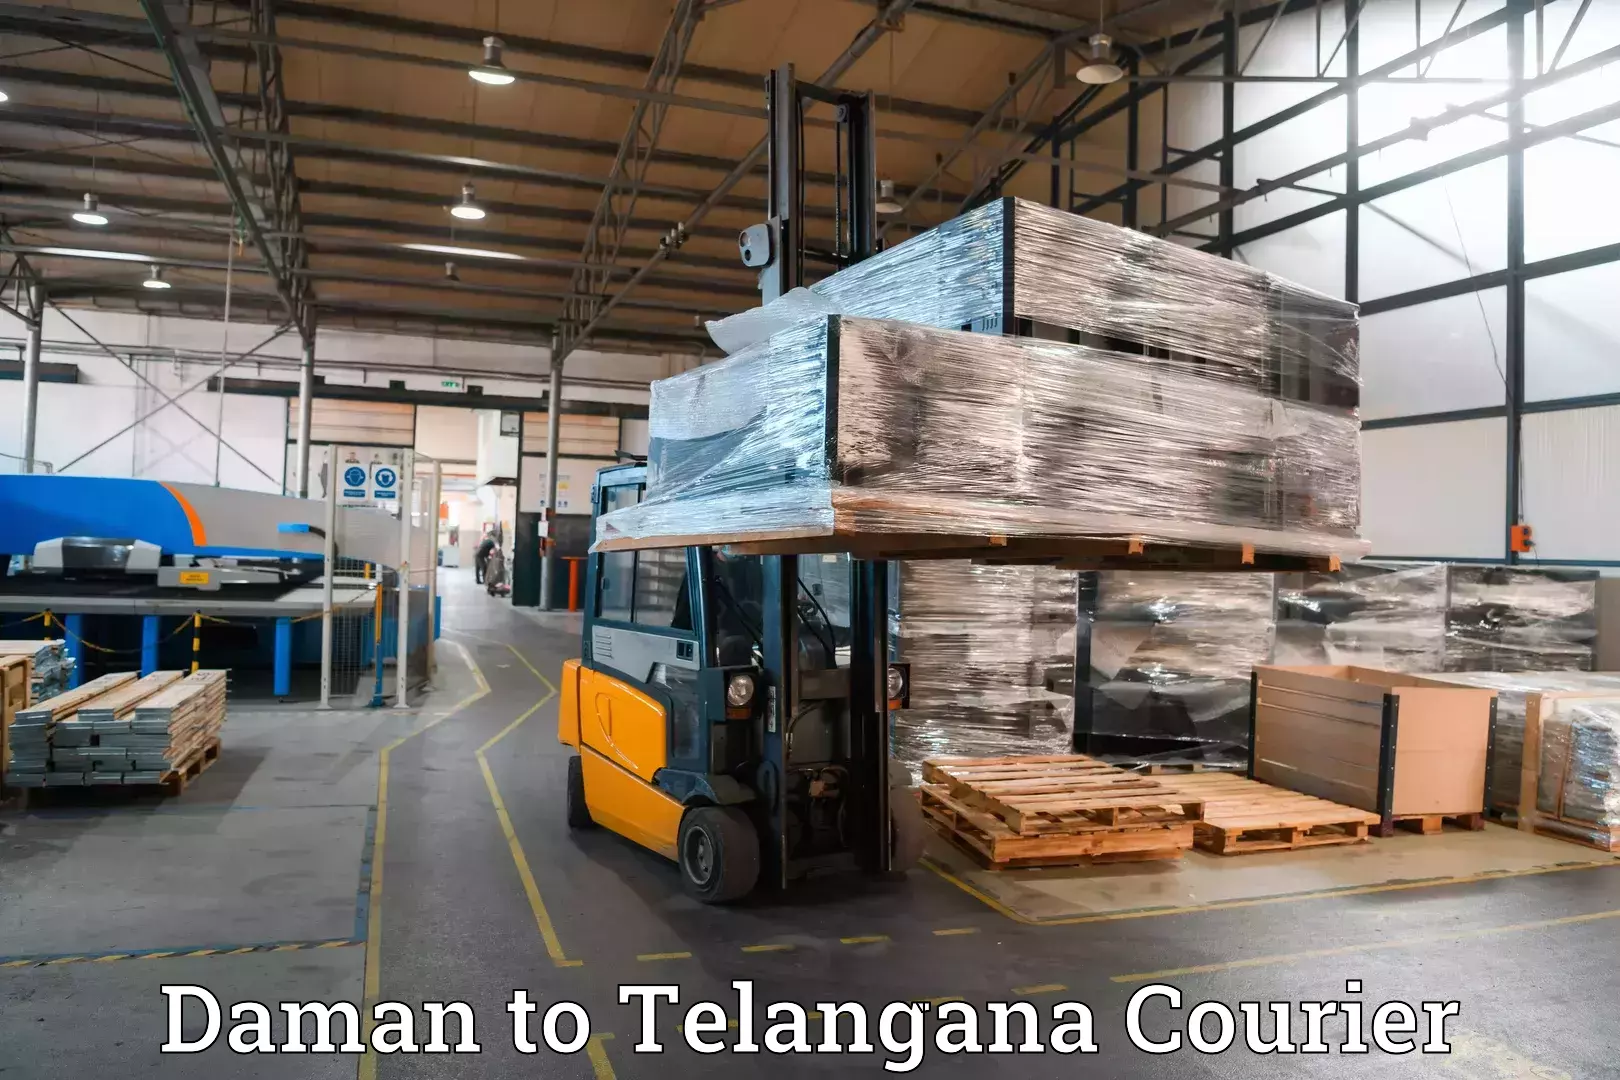 Baggage transport technology Daman to Kollapur